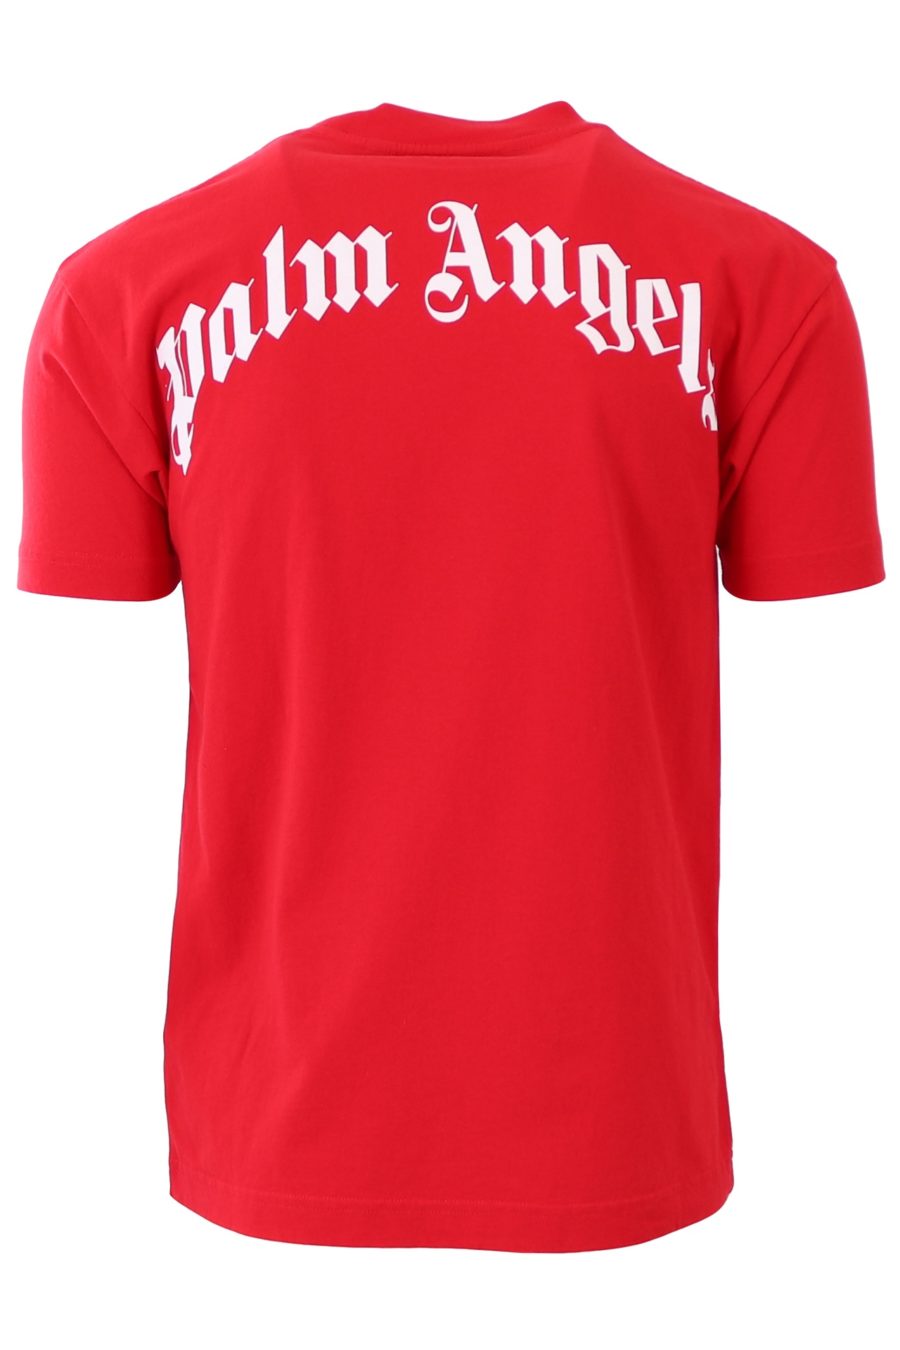 T-shirt Palm Angels red with bear - 32e223a3748e678725c4a8c812146d994f138f03